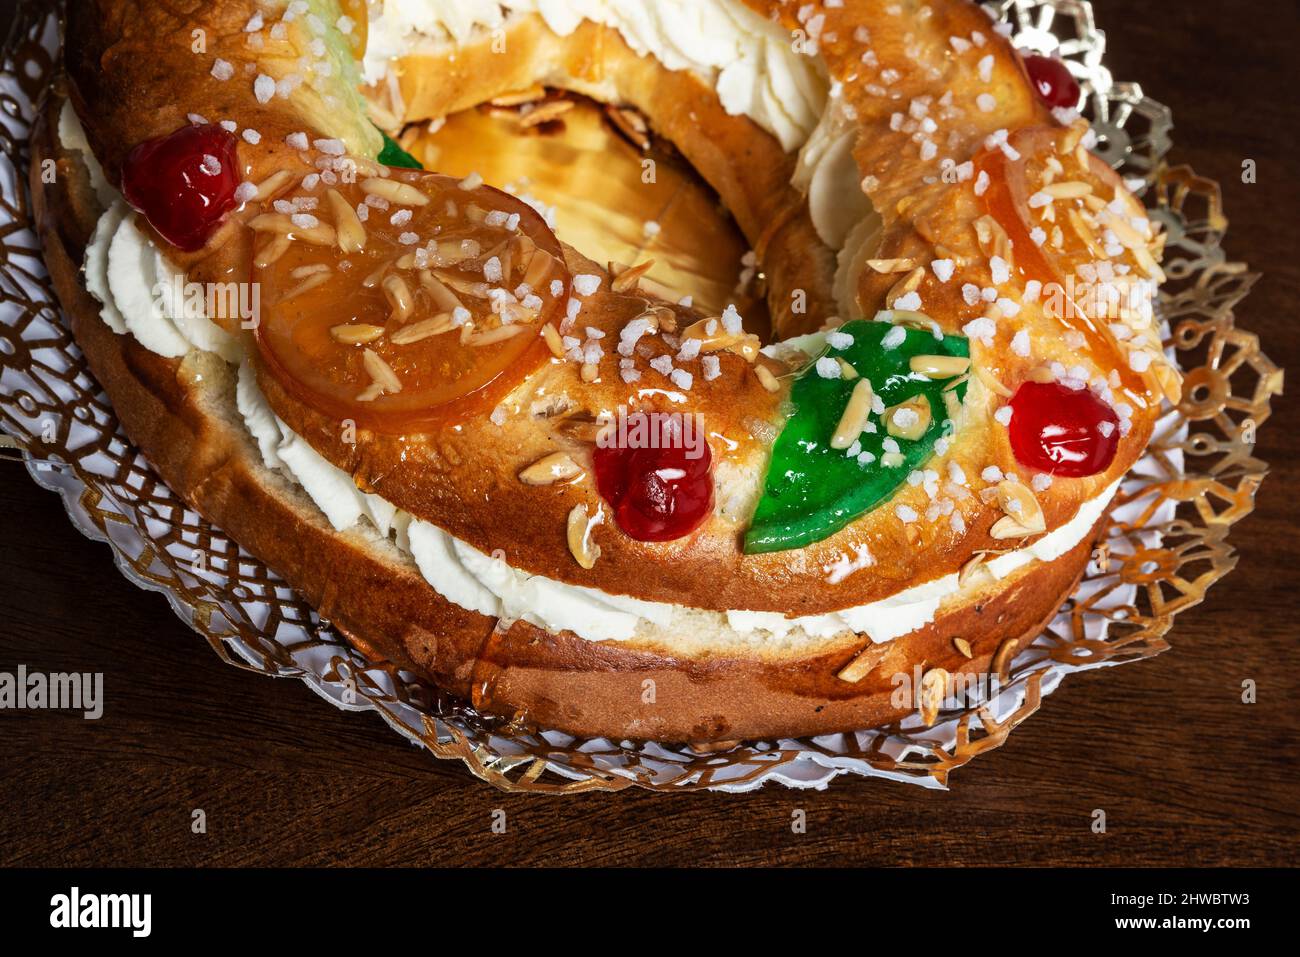 Tortell de reis oder Königskuchen ist ein typischer Kuchen der katalanischen und okzitanischen Küche in Form eines Rings oder Reifens, der aus Brioche-Teig, Blätterteig und Fi hergestellt wird Stockfoto